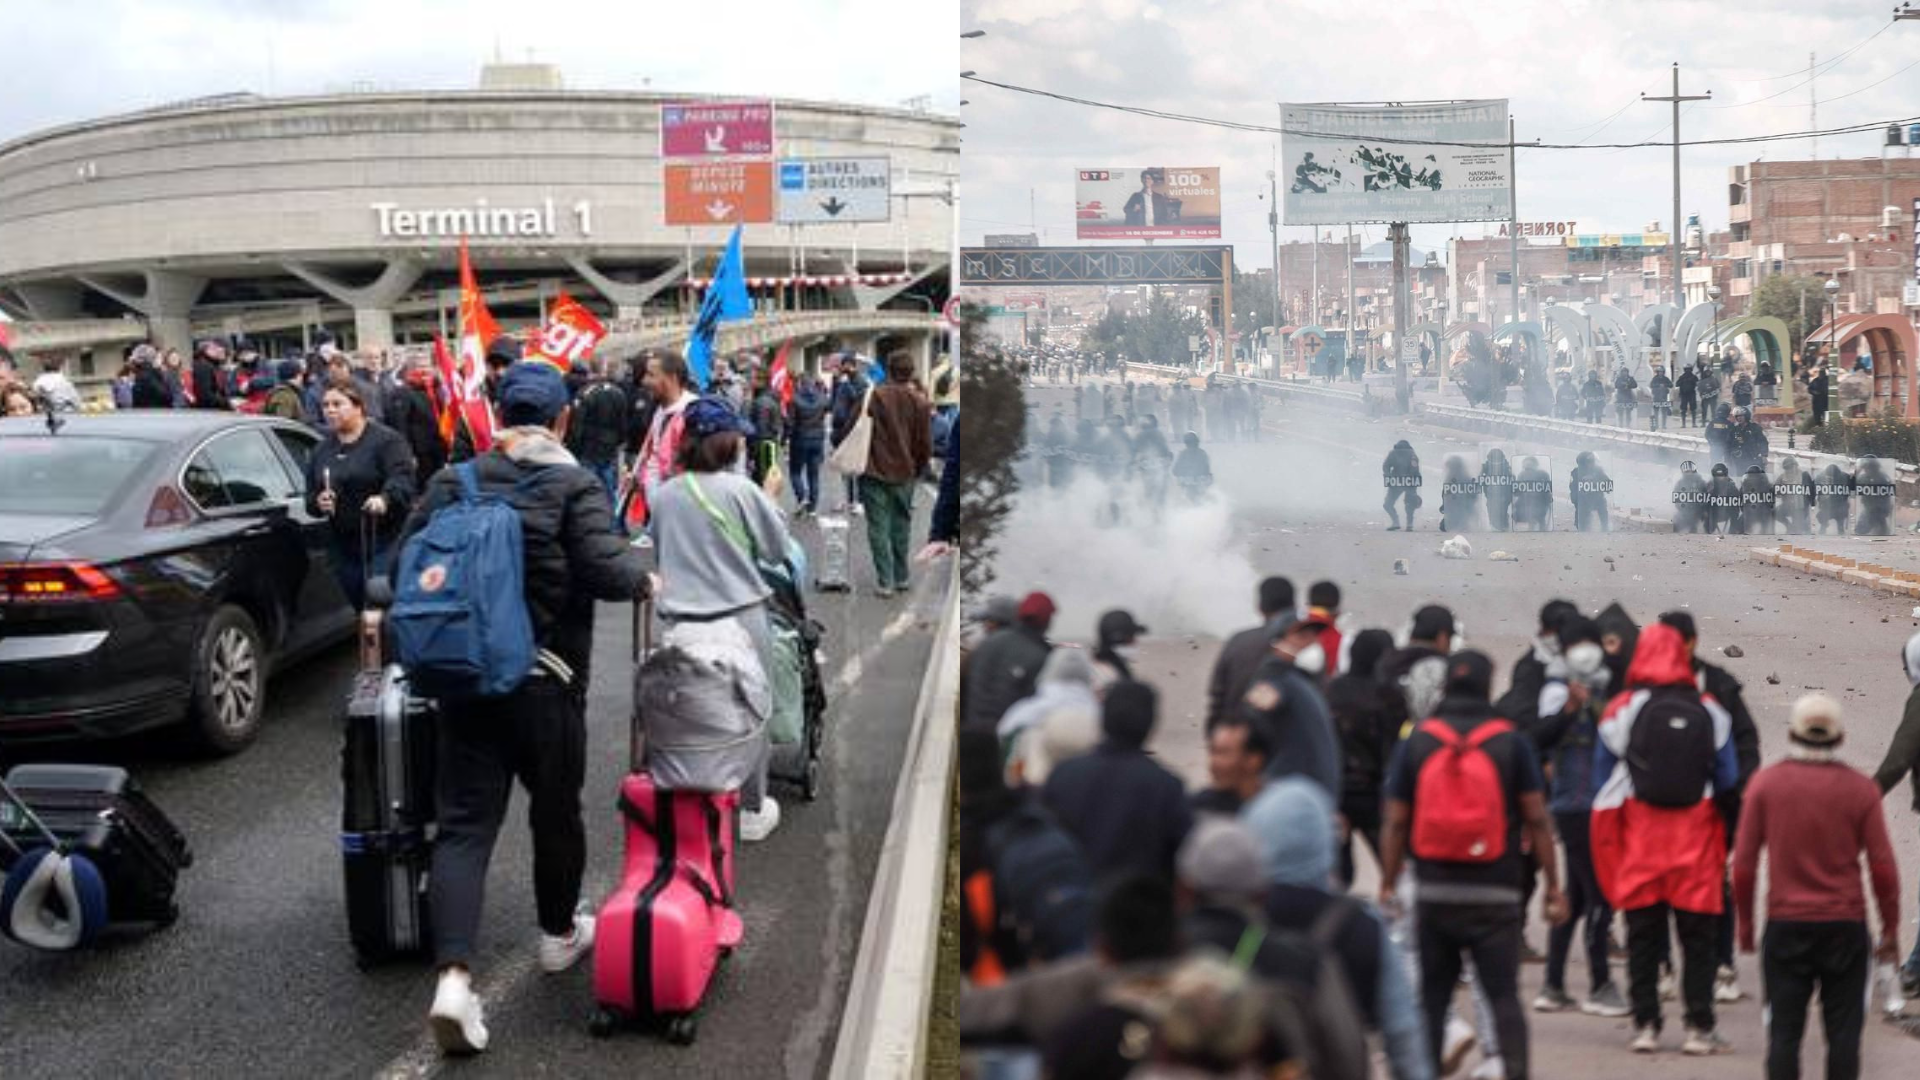 Izquierda: Aeropuerto Charles de Gaulle registra presencia de manifestantes. Derecha: PNP ataca a manifestantes en Juliaca.